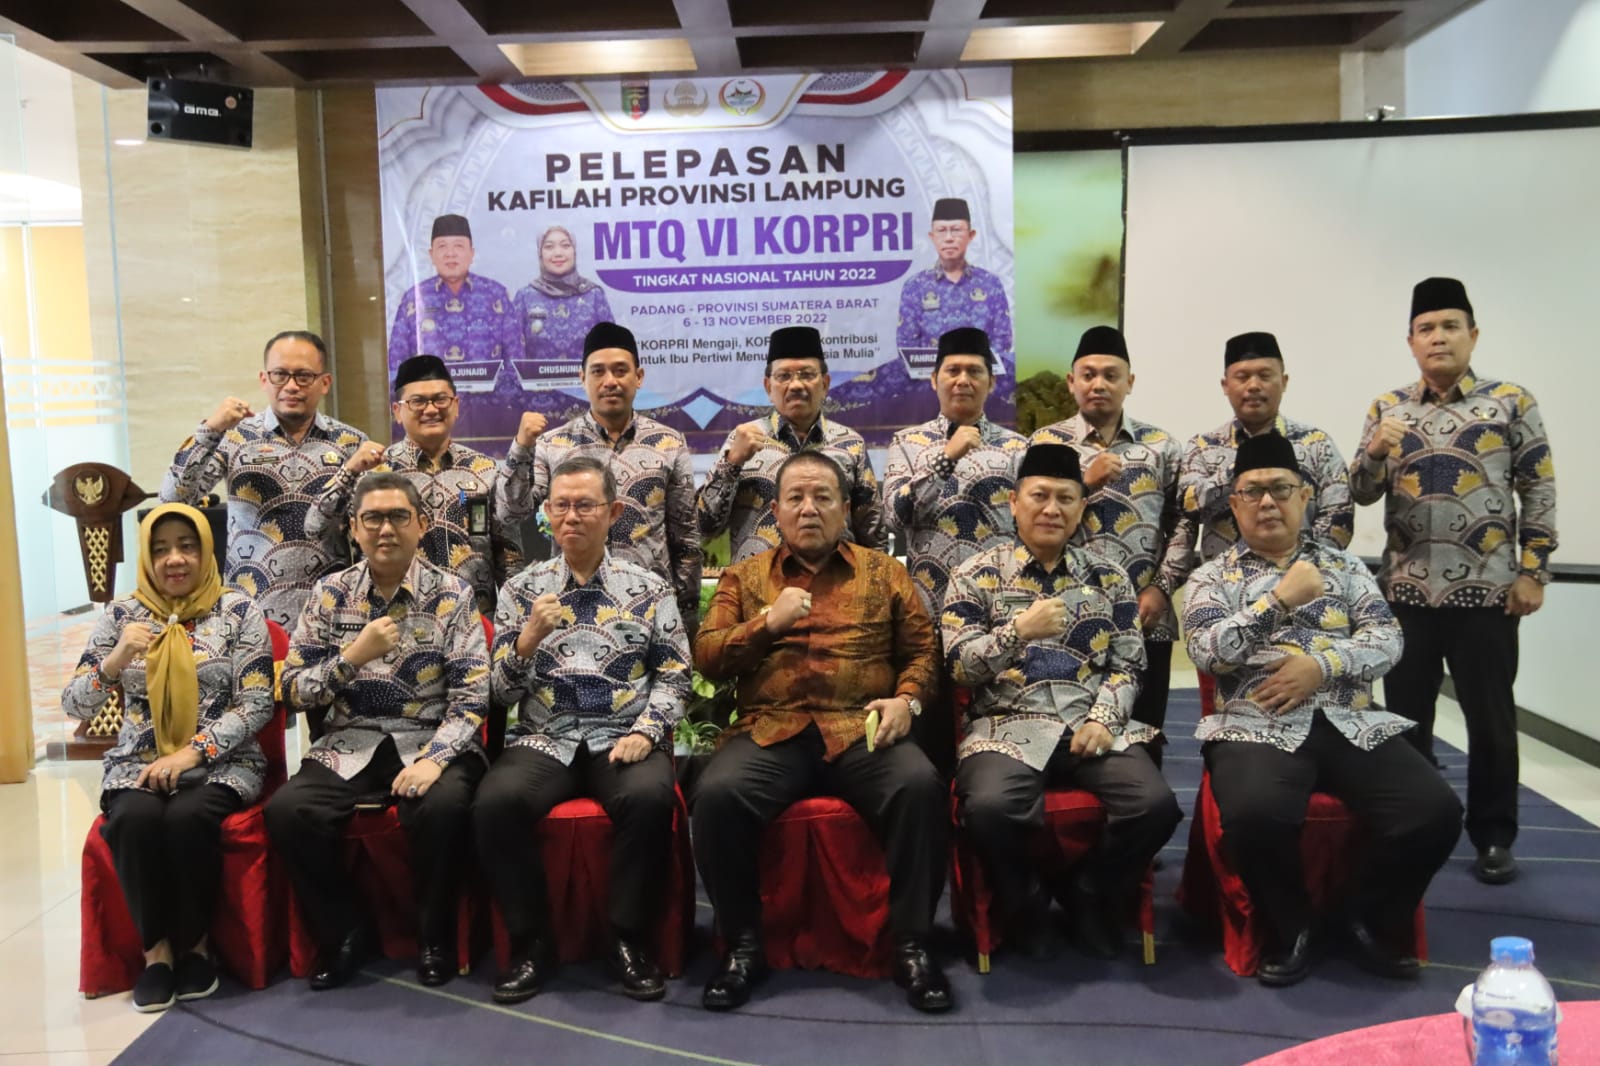 Gubernur Arinal Lepas Kafilah Korpri Provinsi Lampung untuk Mengikuti MTQ VI Korpri Tingkat Nasional di Kota P